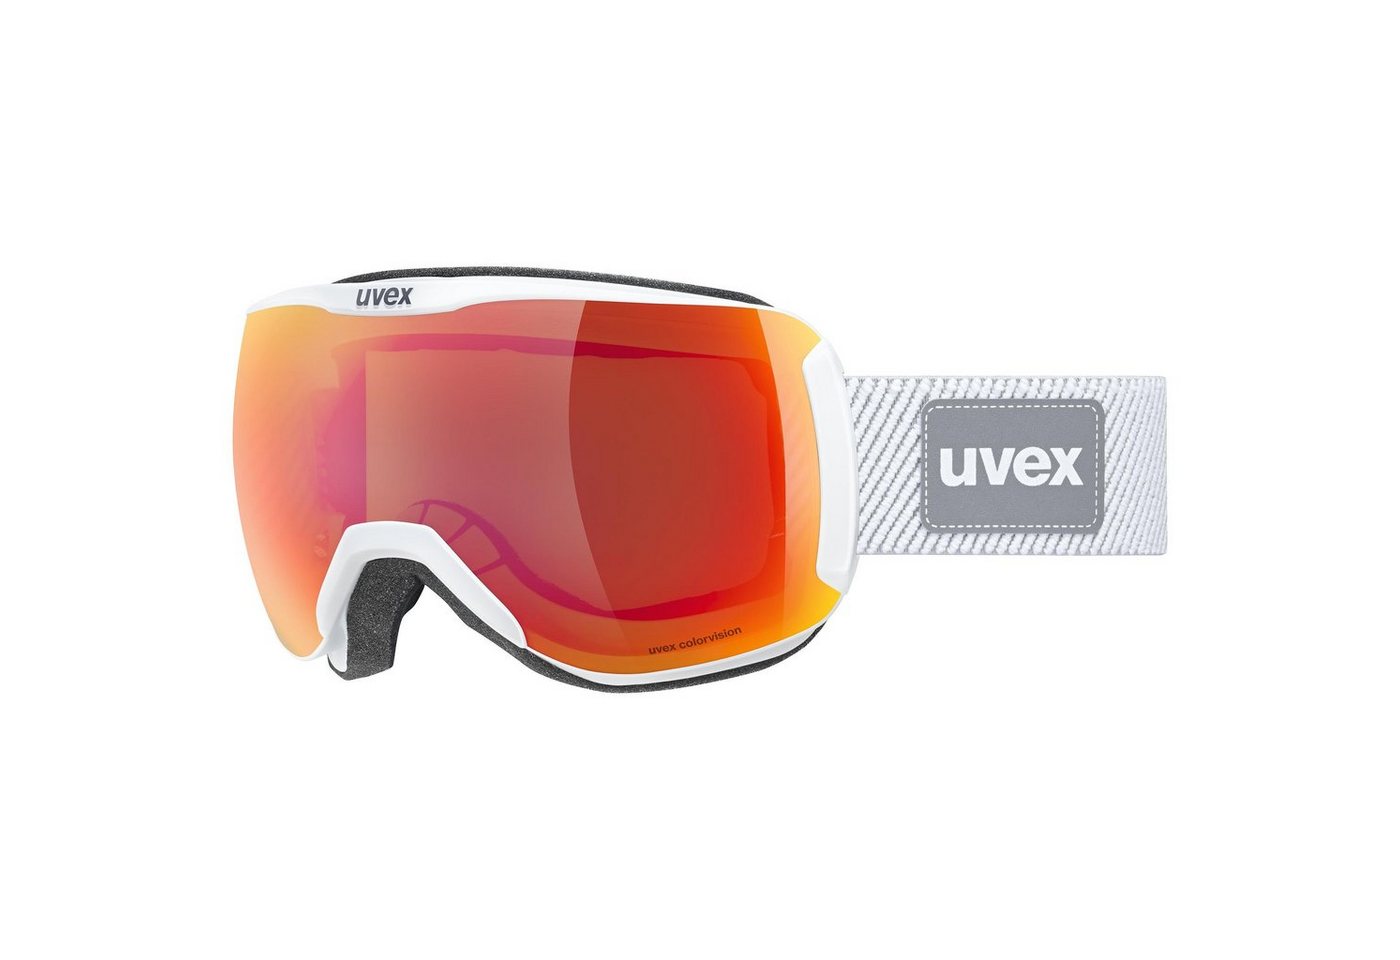 Uvex Skibrille uvex dh 2100 CV planet von Uvex